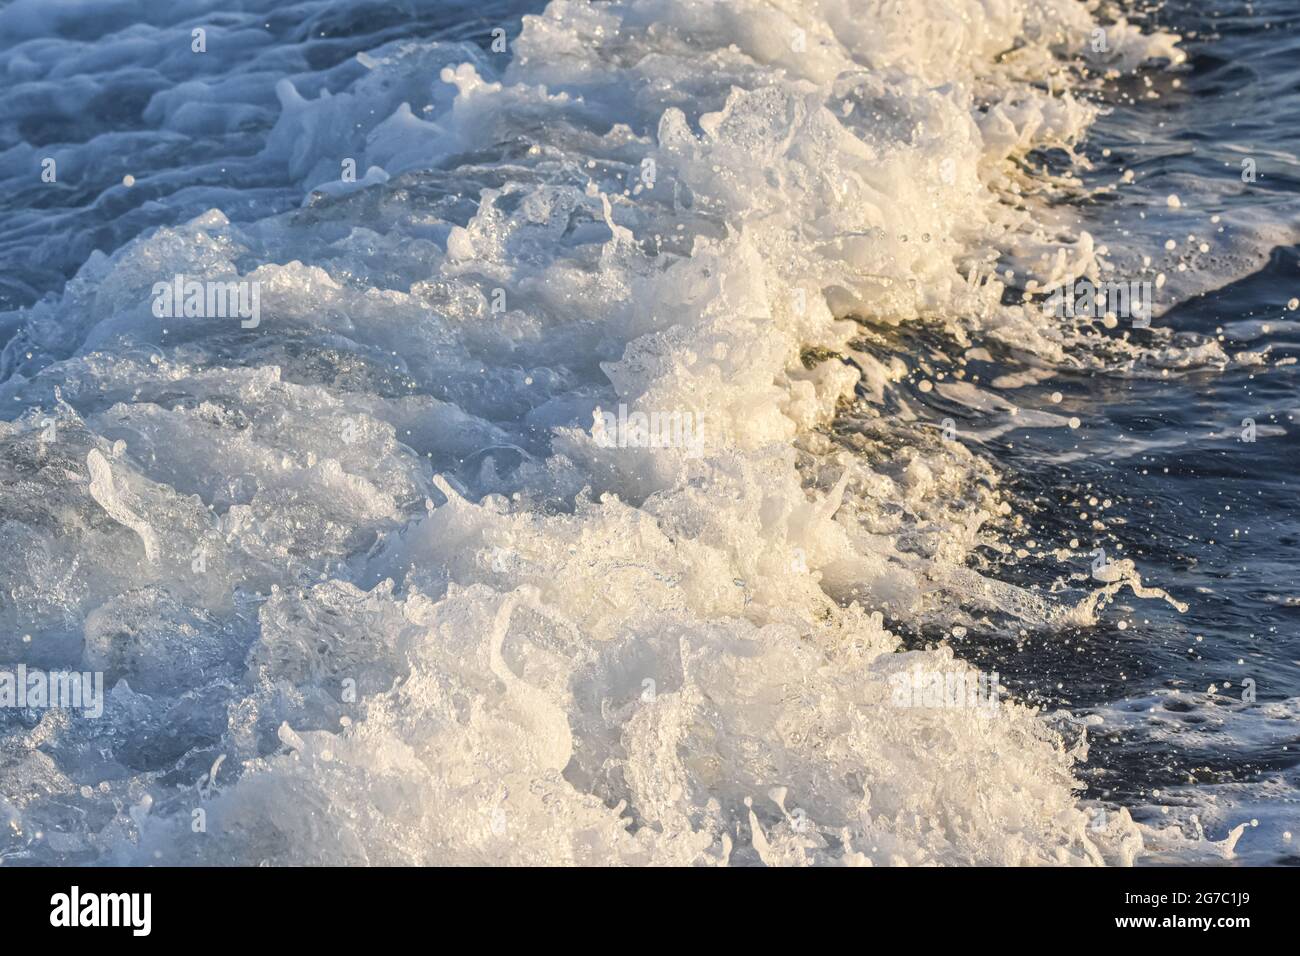 Im Gefolge eines großen Schiffes wurde das Meerwasser zu einem Schaum. Am späten Nachmittag goldenes Licht. Stockfoto